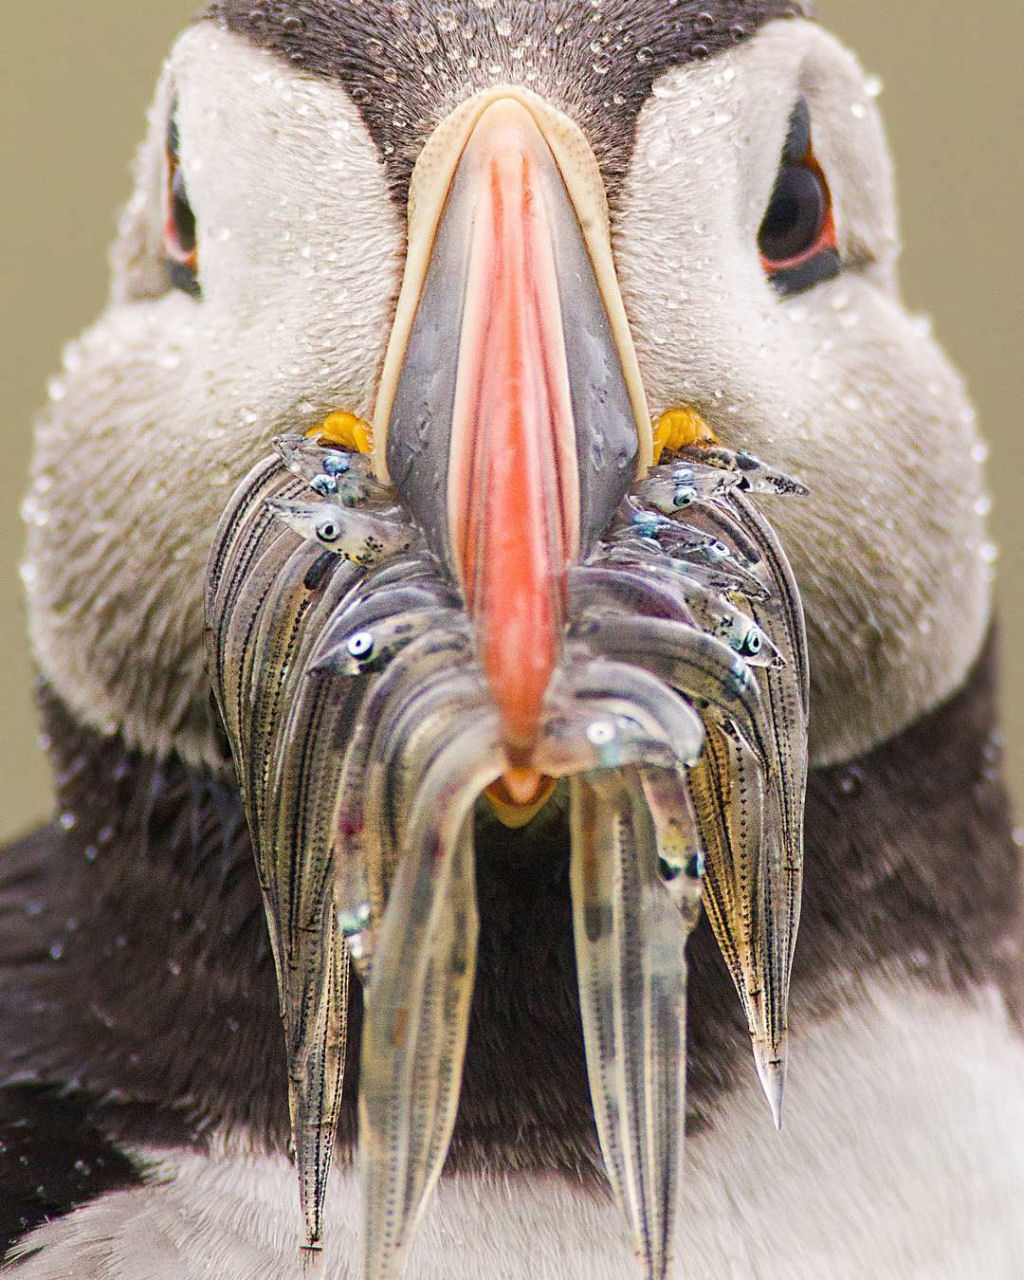 Papagaio do mar com o bico cheio de peixe.